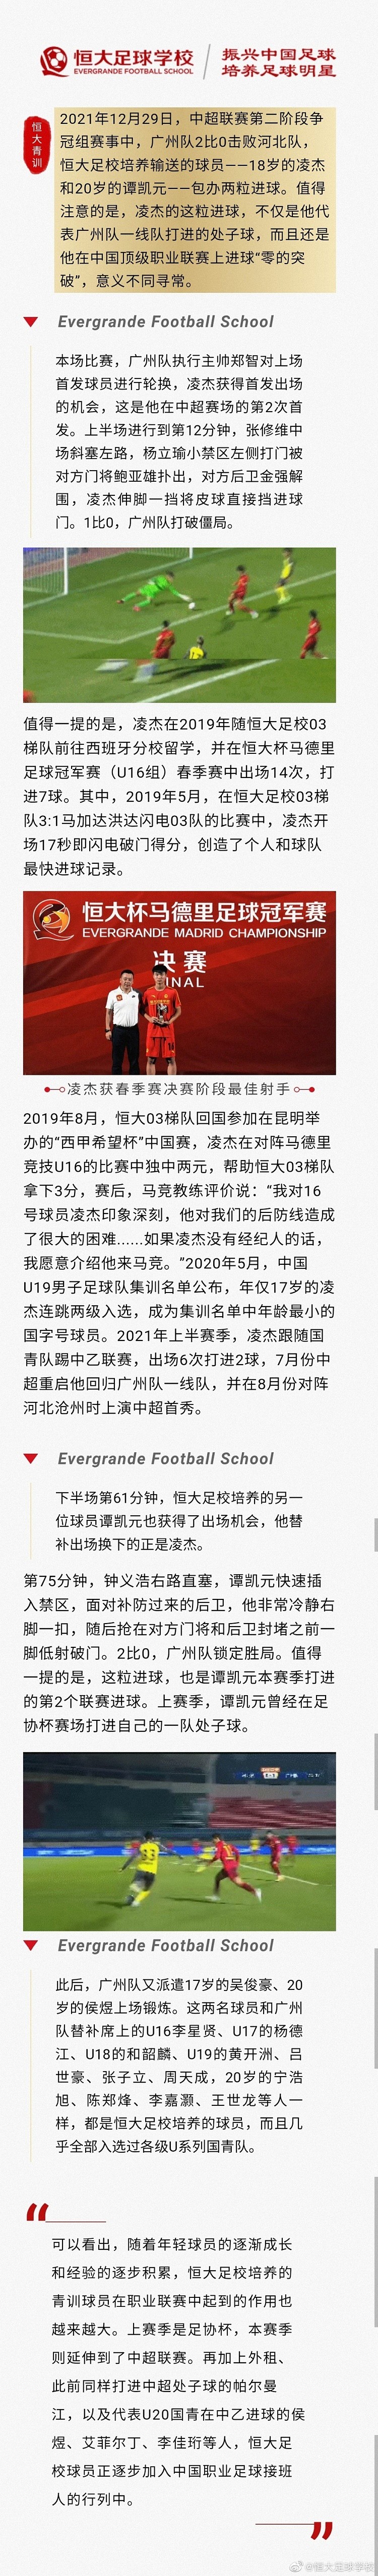 恒大足校庆祝凌杰、谭凯元破门：他们正加入中国足球接班人行列